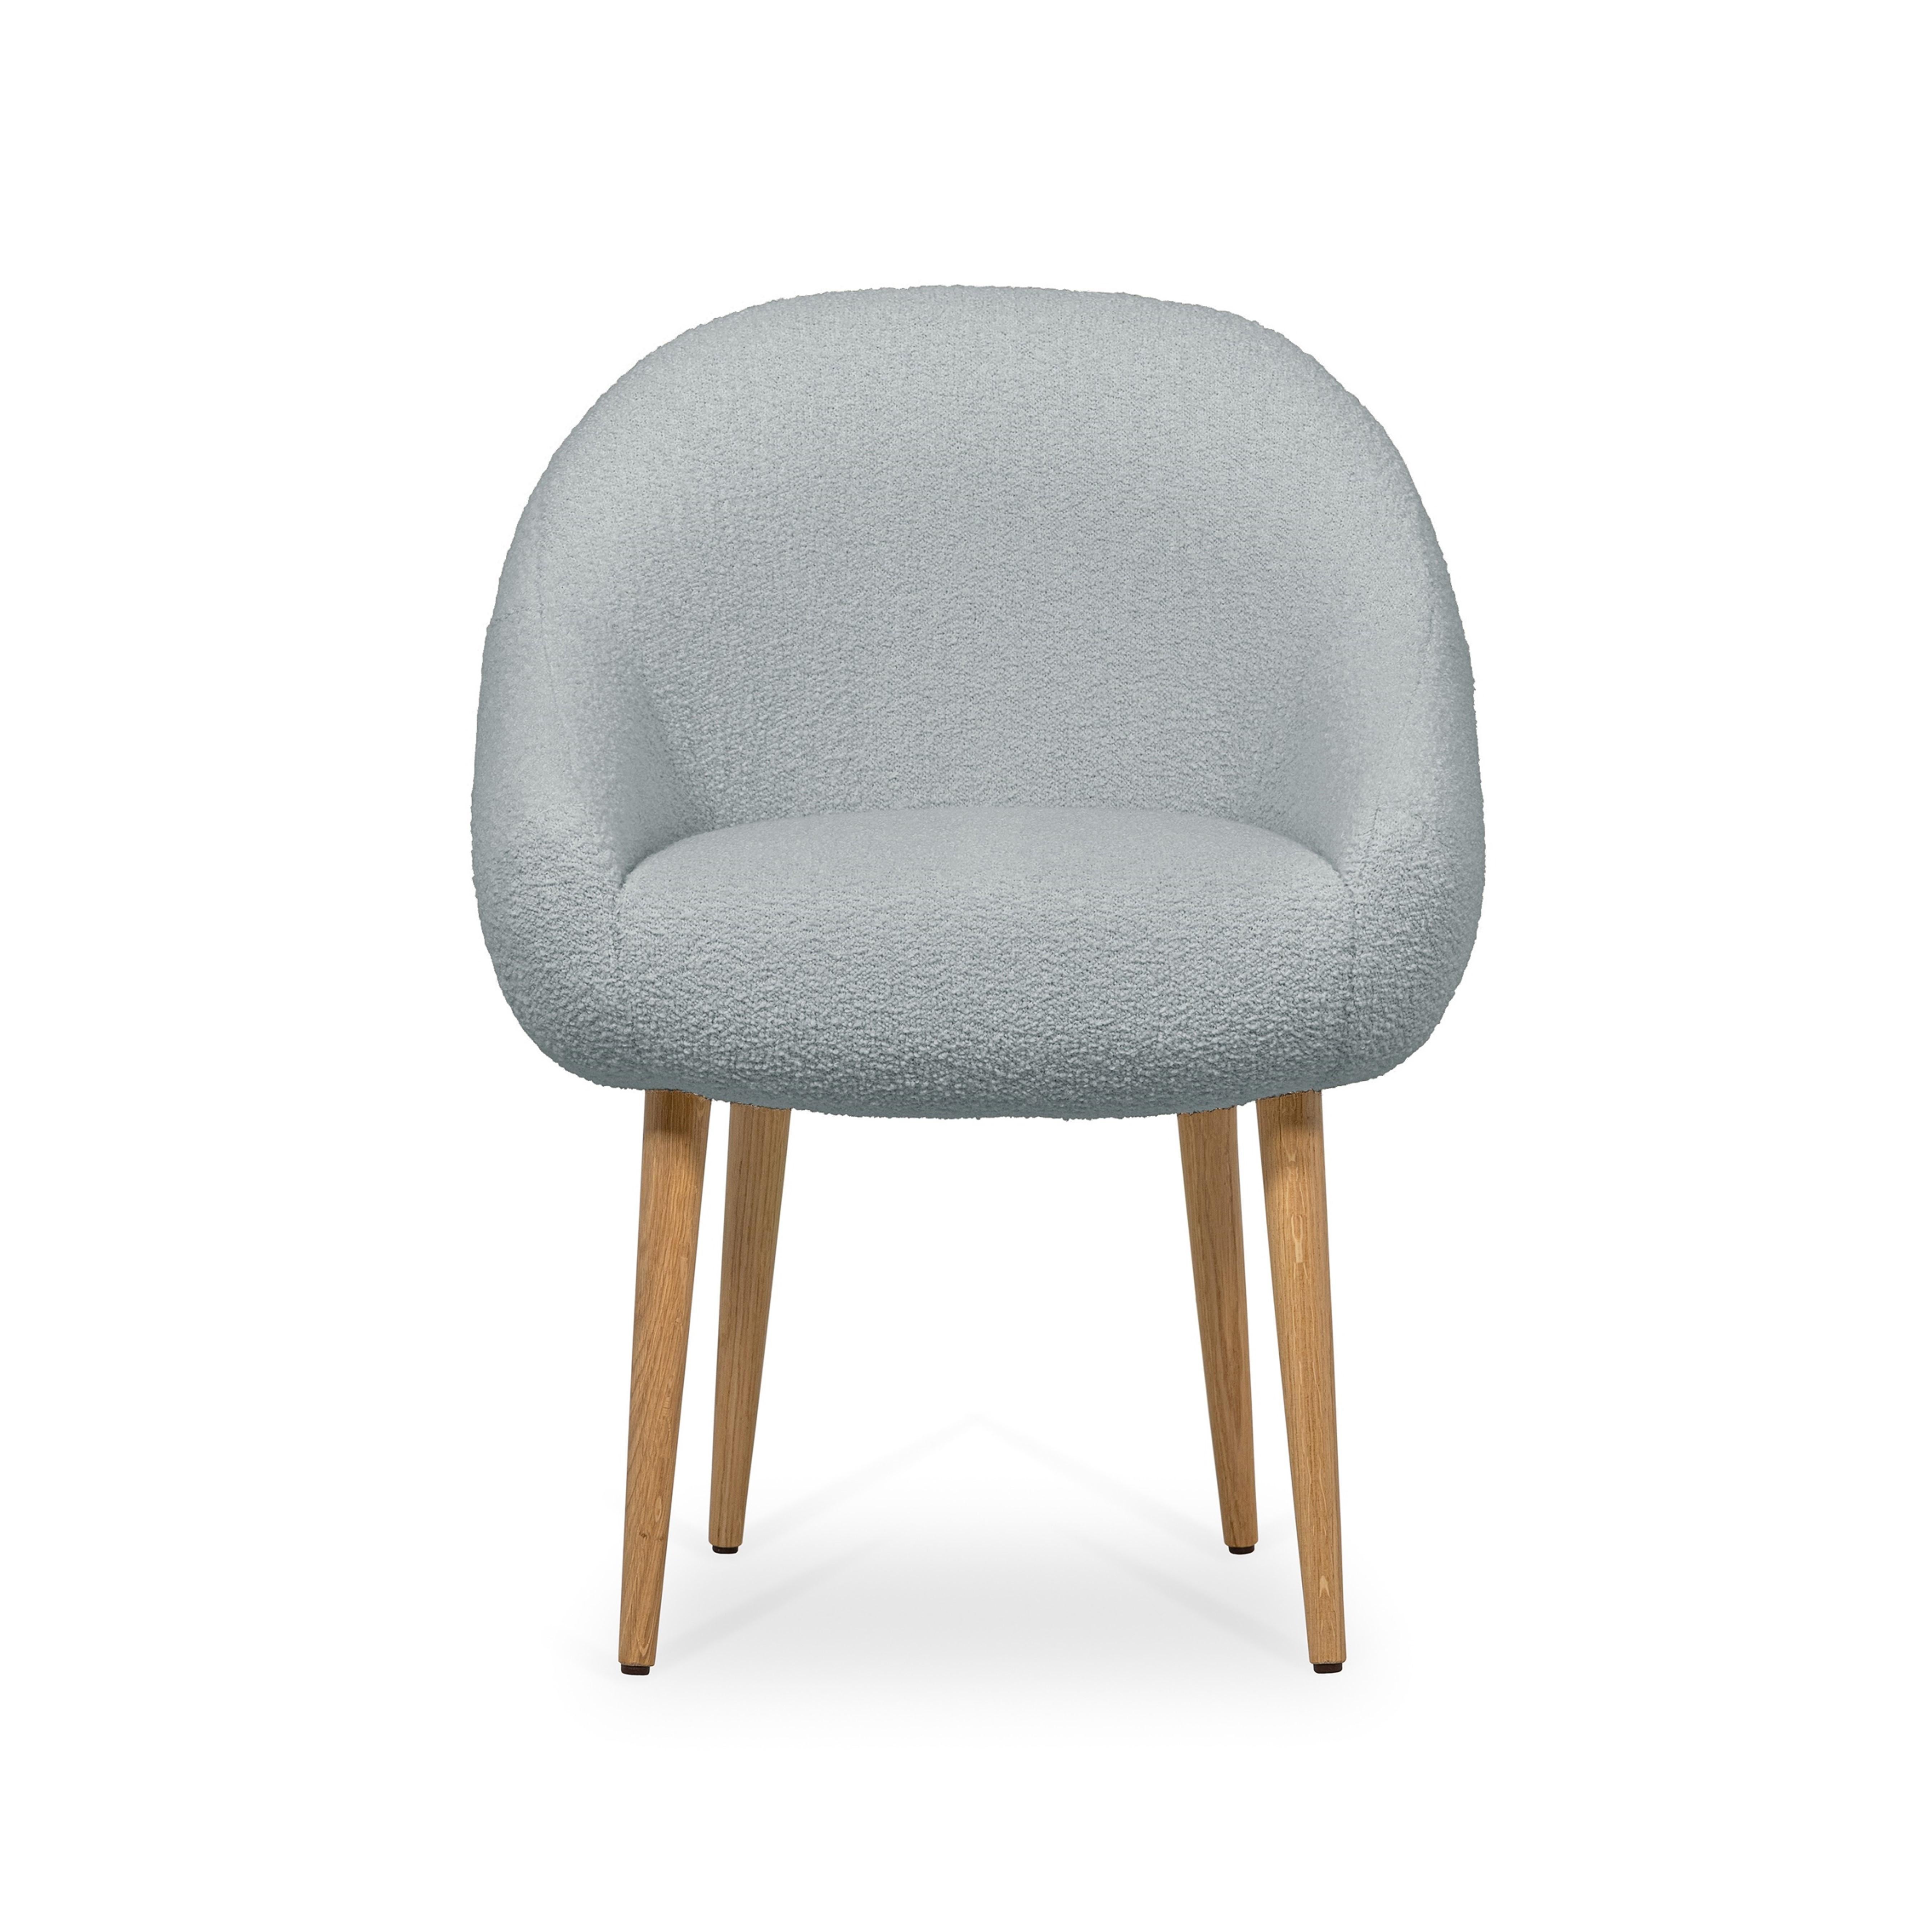 La chaise de salle à manger Niemeyer porte le nom de l'architecte brésilien Oscar Niemeyer, dont l'architecture s'est répandue comme une poésie sculpturale dans l'histoire de l'humanité. Les lignes arrondies de la chaise sont influencées par la